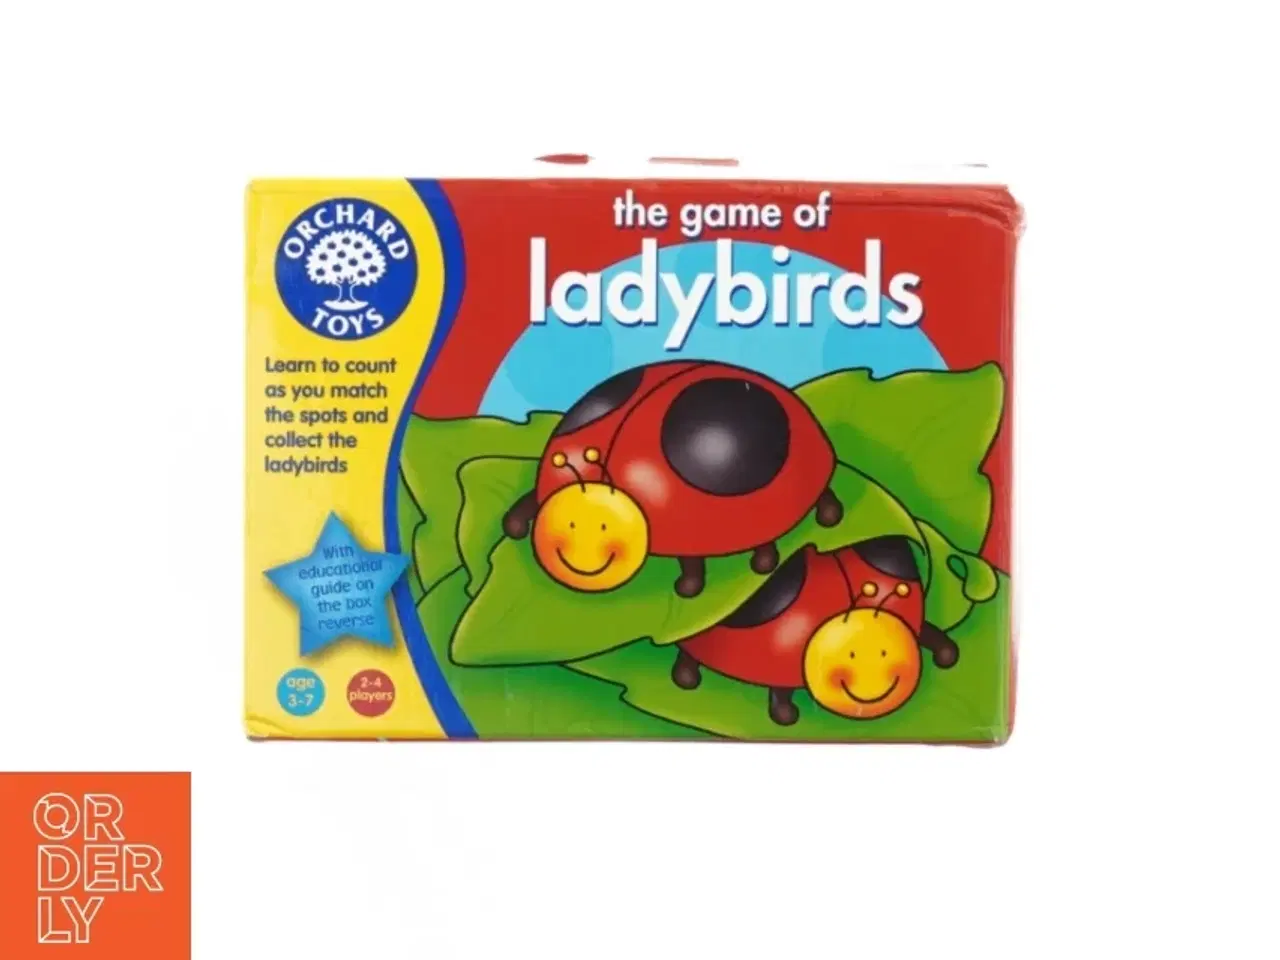 Billede 1 - The game of lady birds (Brætspil) fra Orchid Toys (str. 20 x 14 cm)